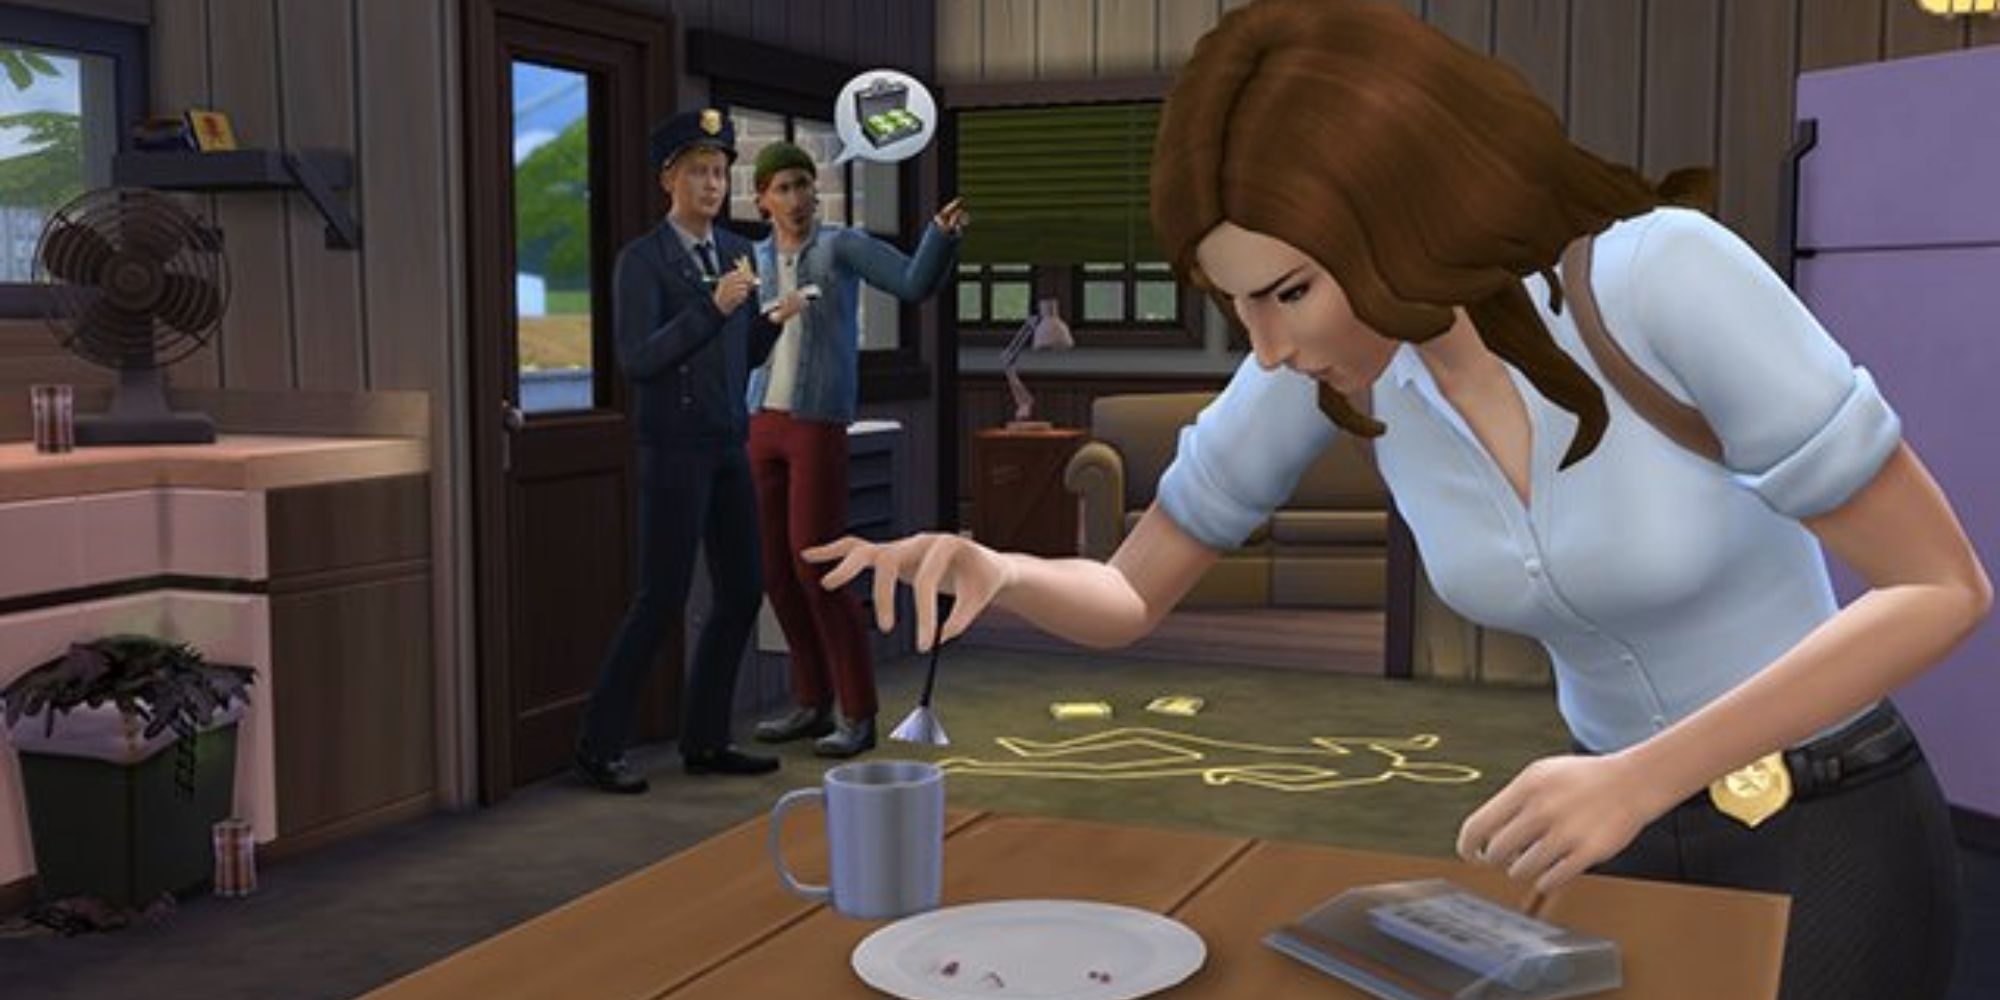 The Sims thu thập bằng chứng